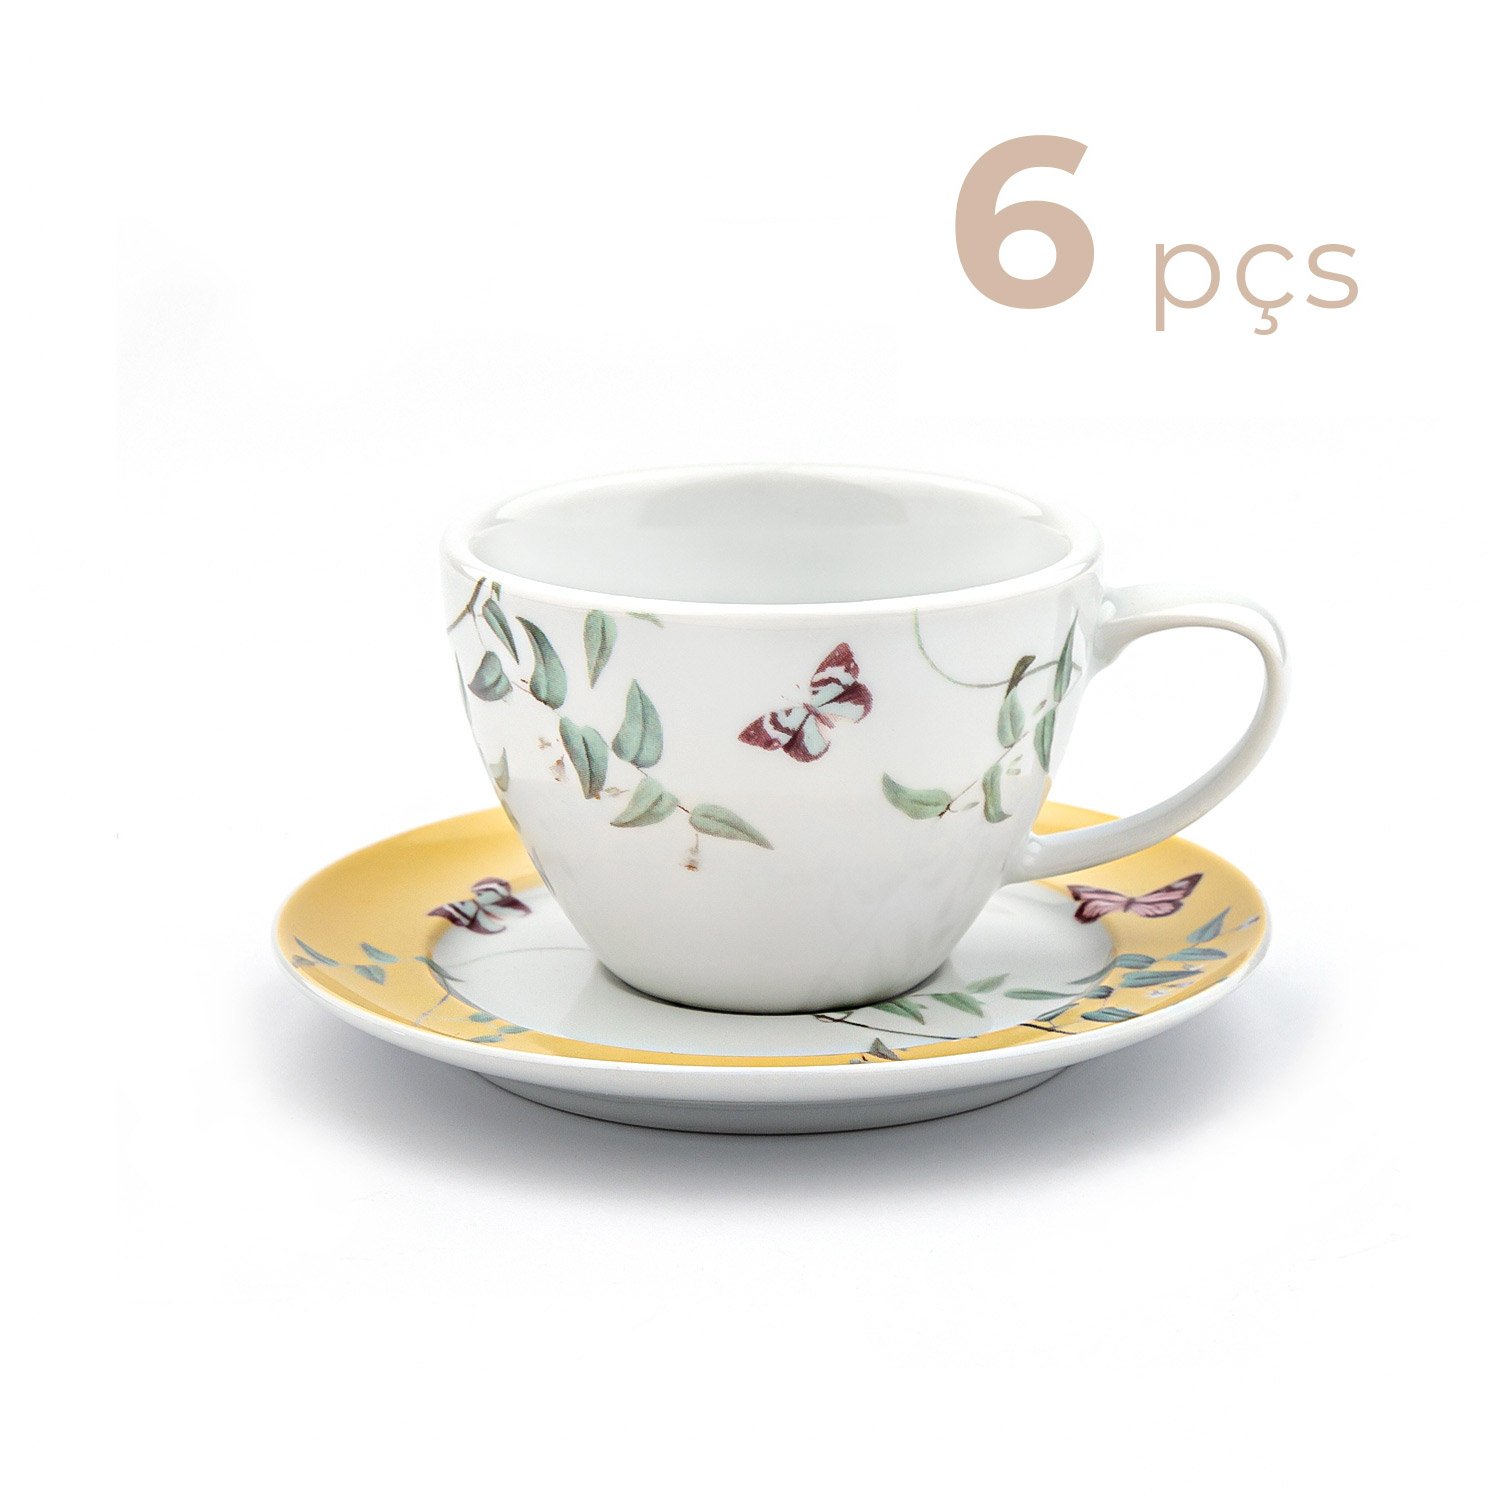 Jogo Chá Porcelana - Serve 6 Pessoas - 22 Peças - Pascoa